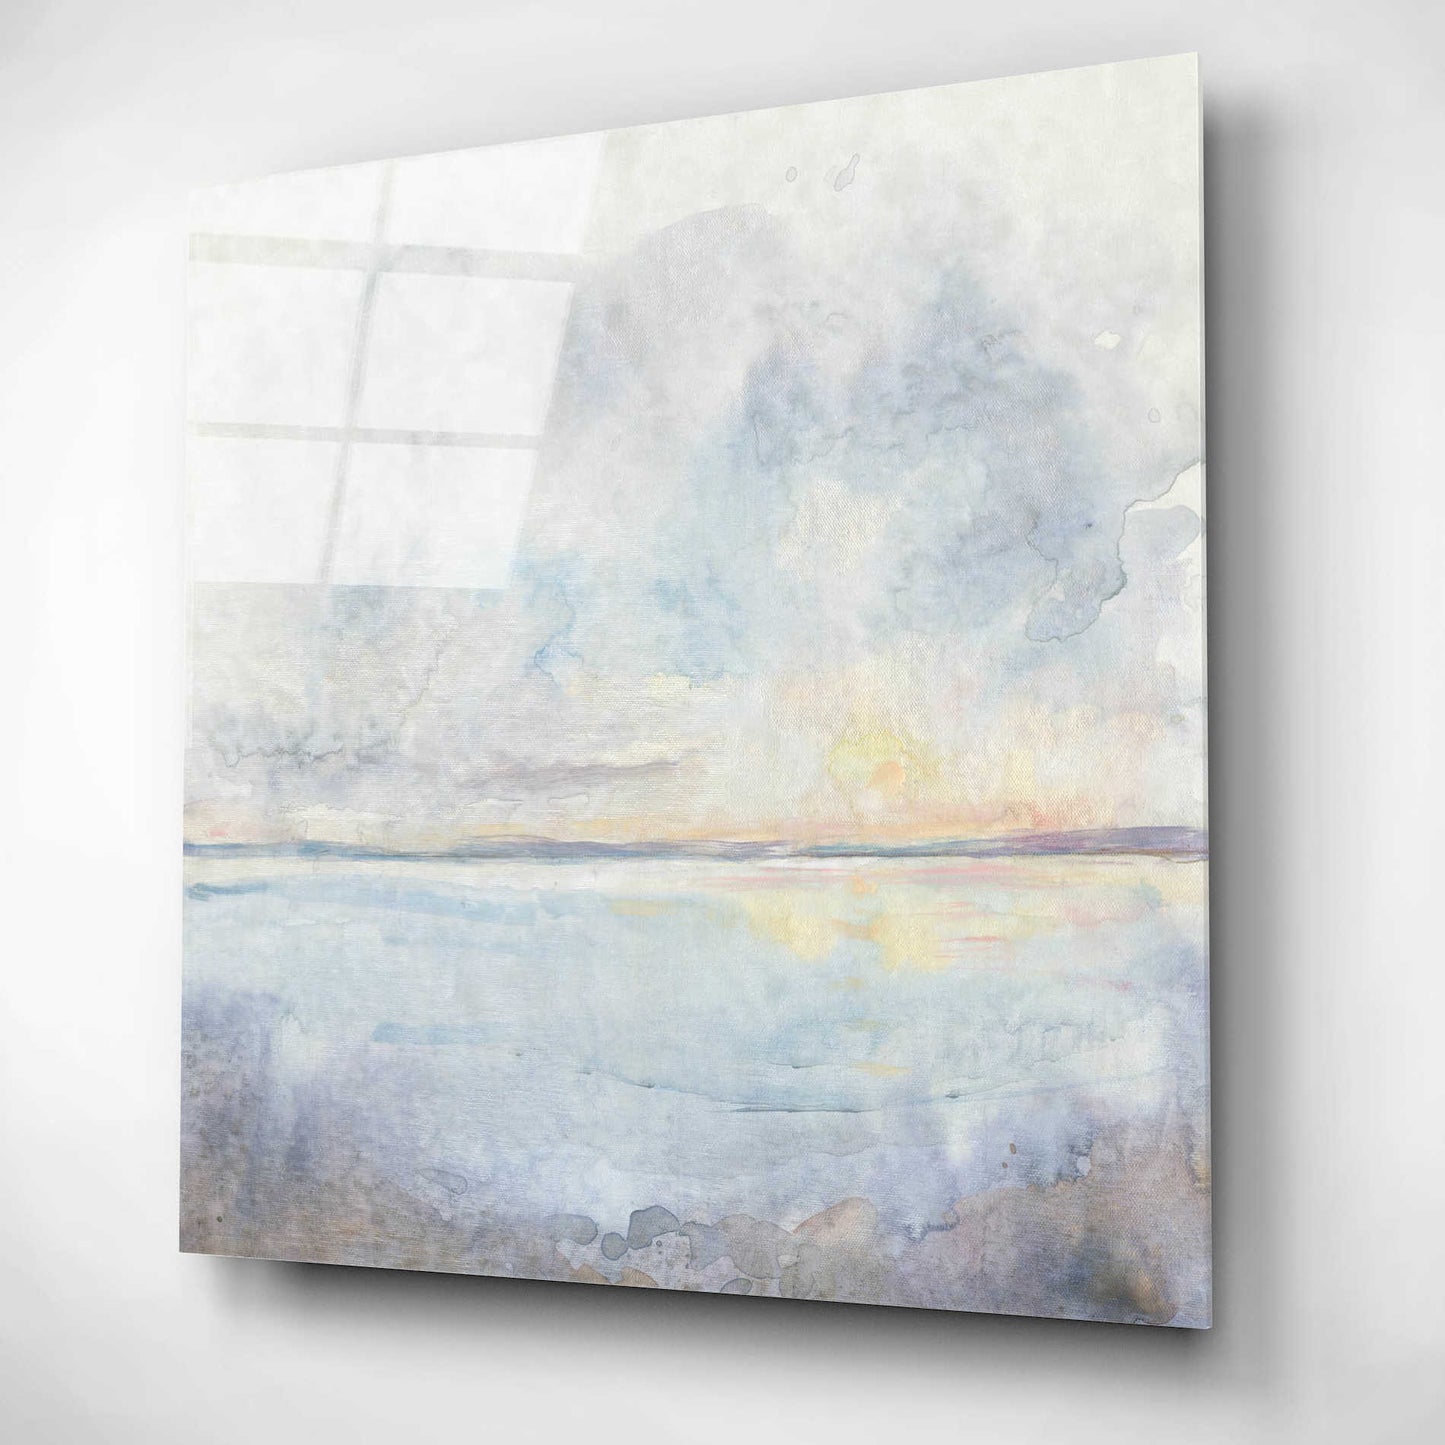 Epic Art 'Sea Mist I' by Tim O'Toole, Acrylic Glass Wall Art,12x12